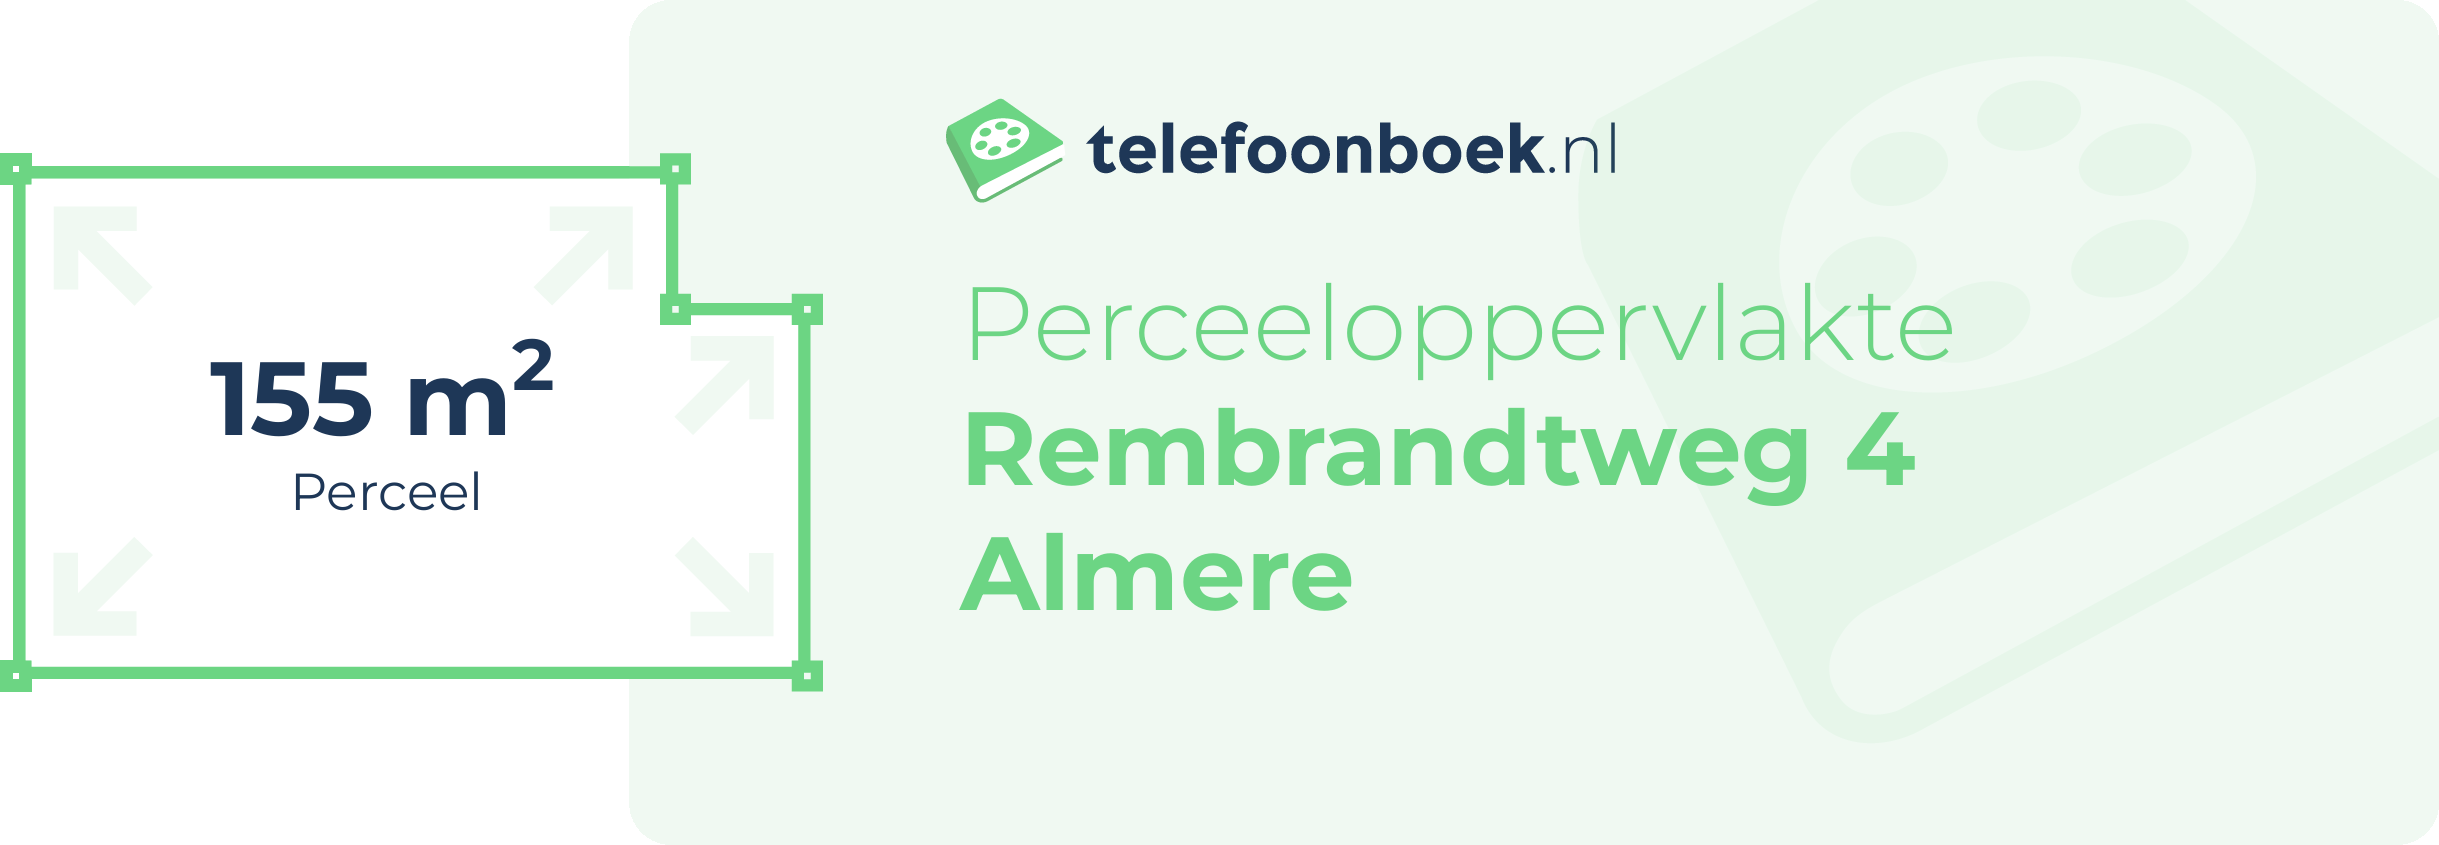 Perceeloppervlakte Rembrandtweg 4 Almere